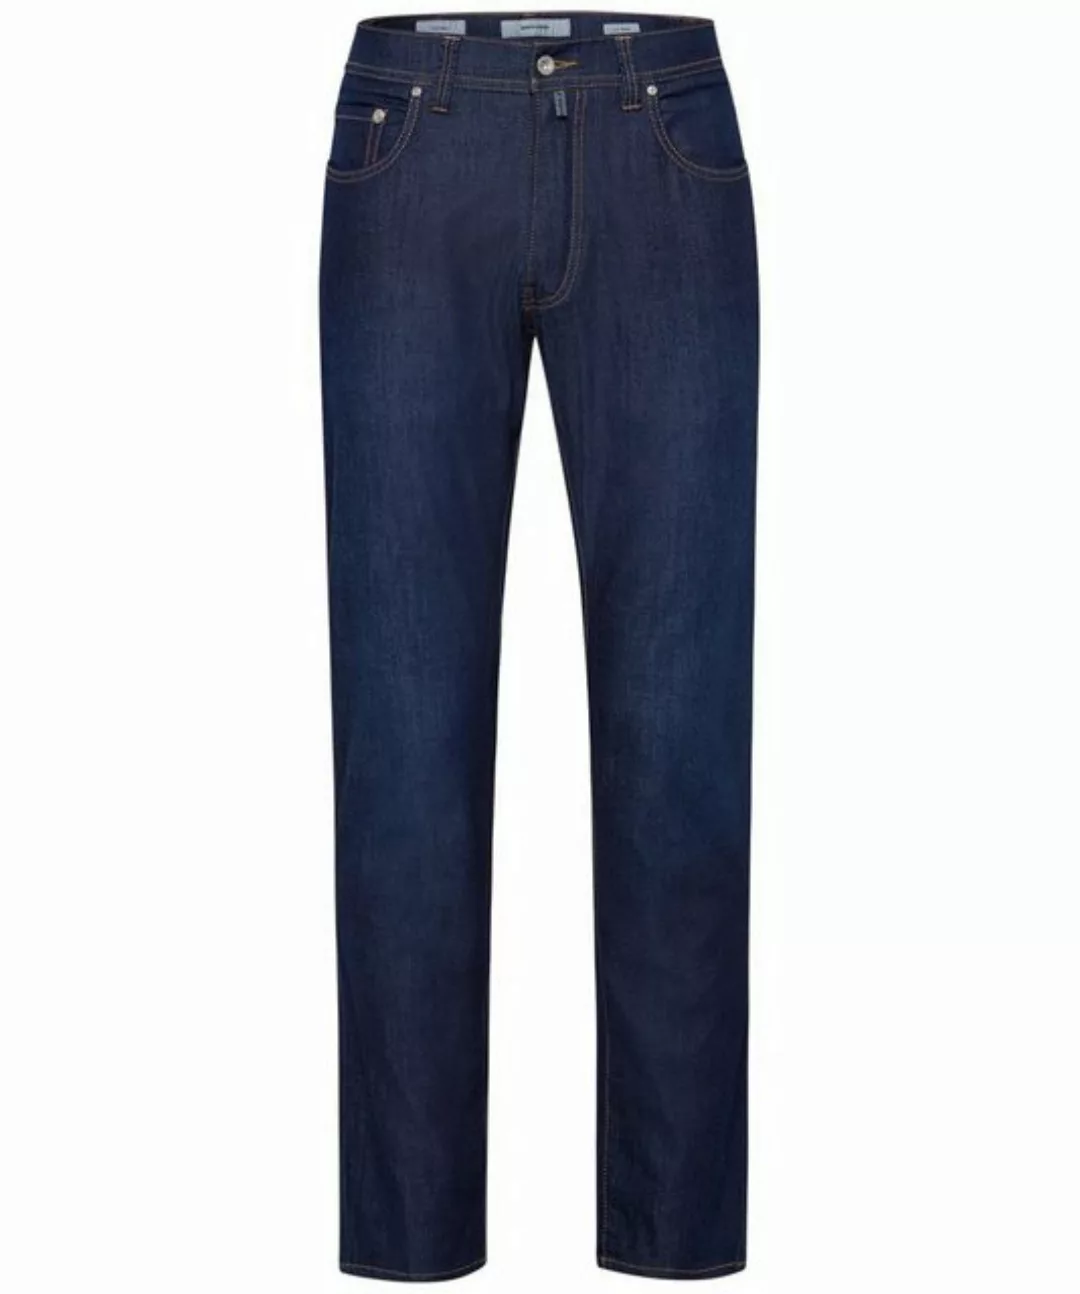 Pierre Cardin 5-Pocket-Jeans PIERRE CARDIN LYON TAPERED dark blue rinsed 34 günstig online kaufen